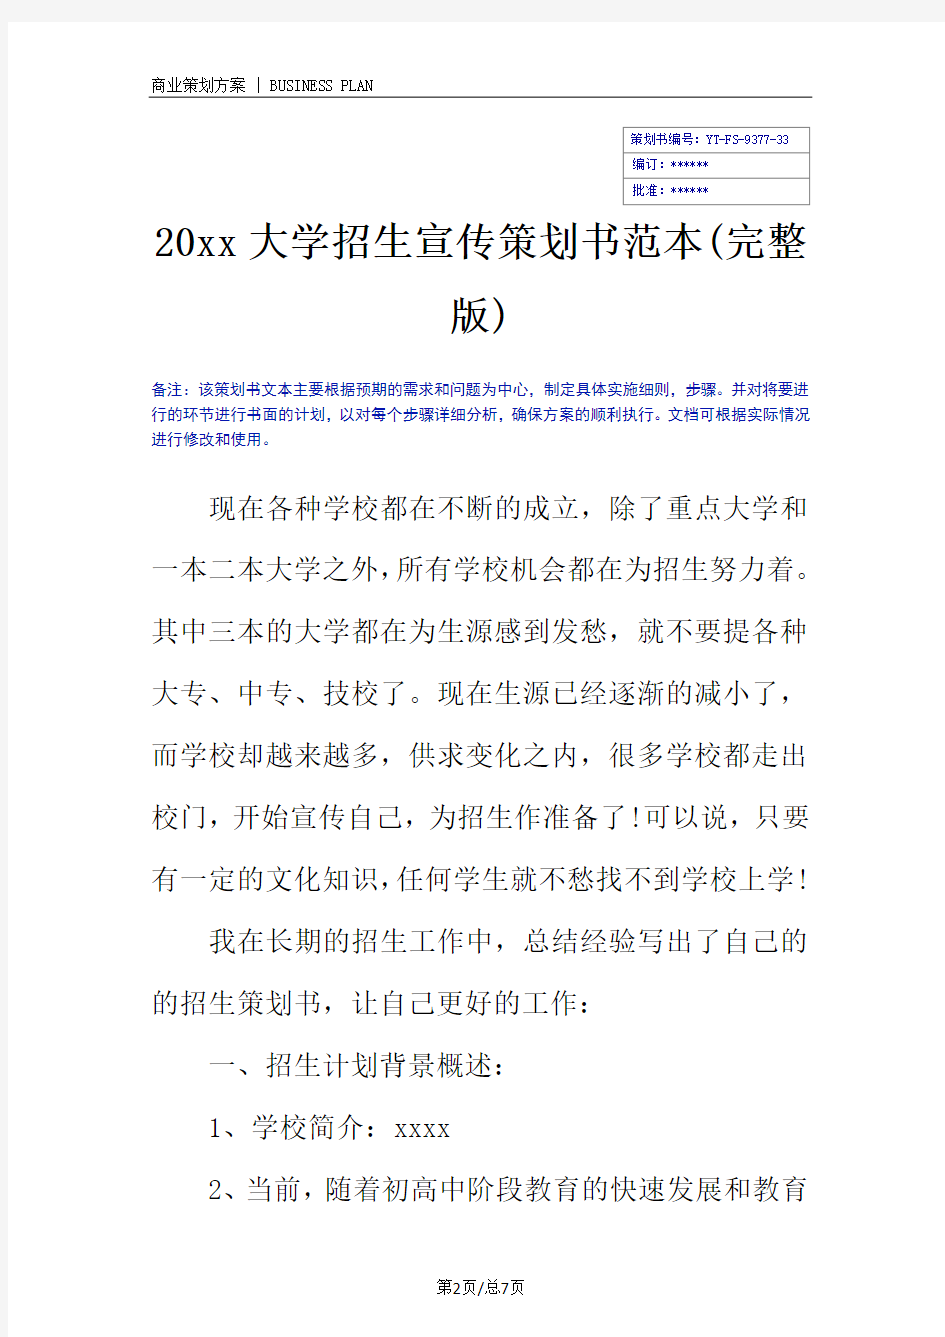 20xx大学招生宣传策划书范本(完整版)